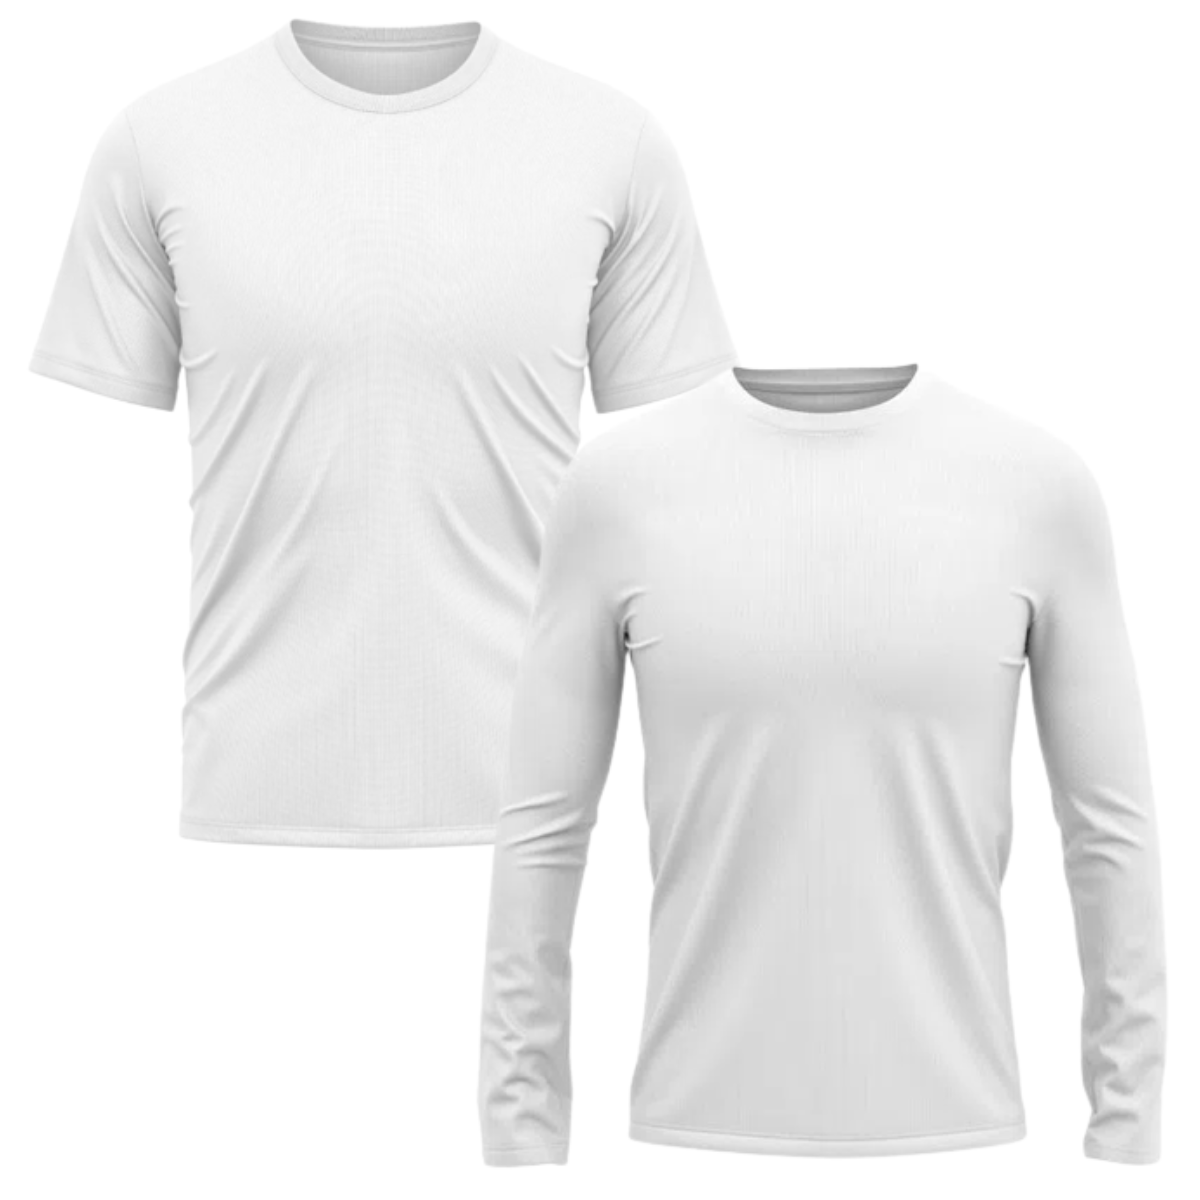 Camisa térmica e proteção UV manga longa e manga curta branca